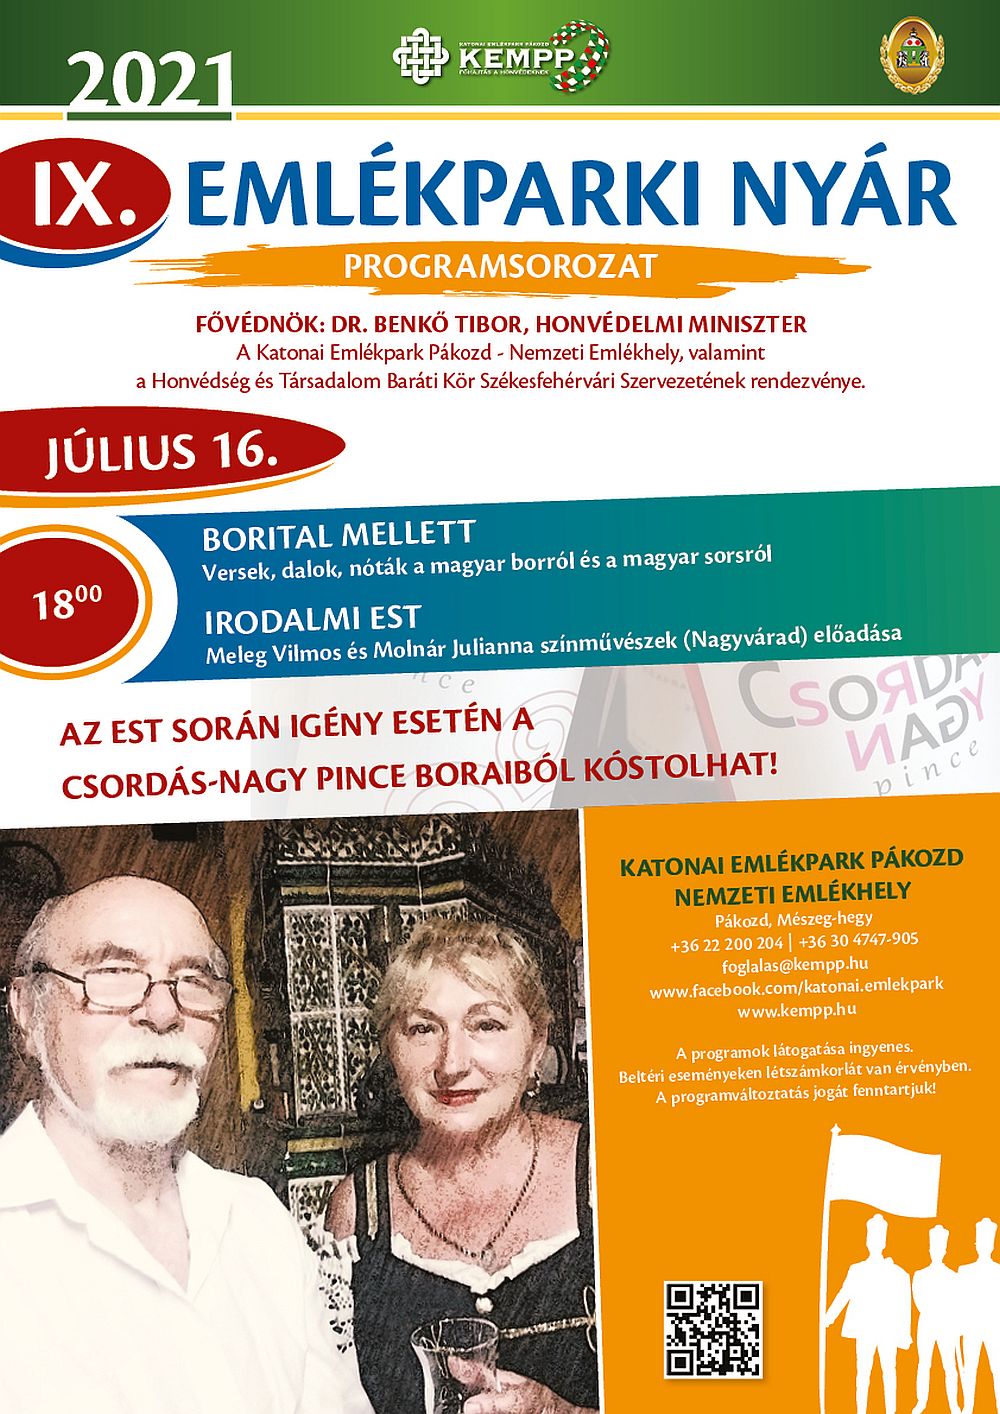 Borital mellett - irodalmi esttel folytatódik az Emlékparki Nyár